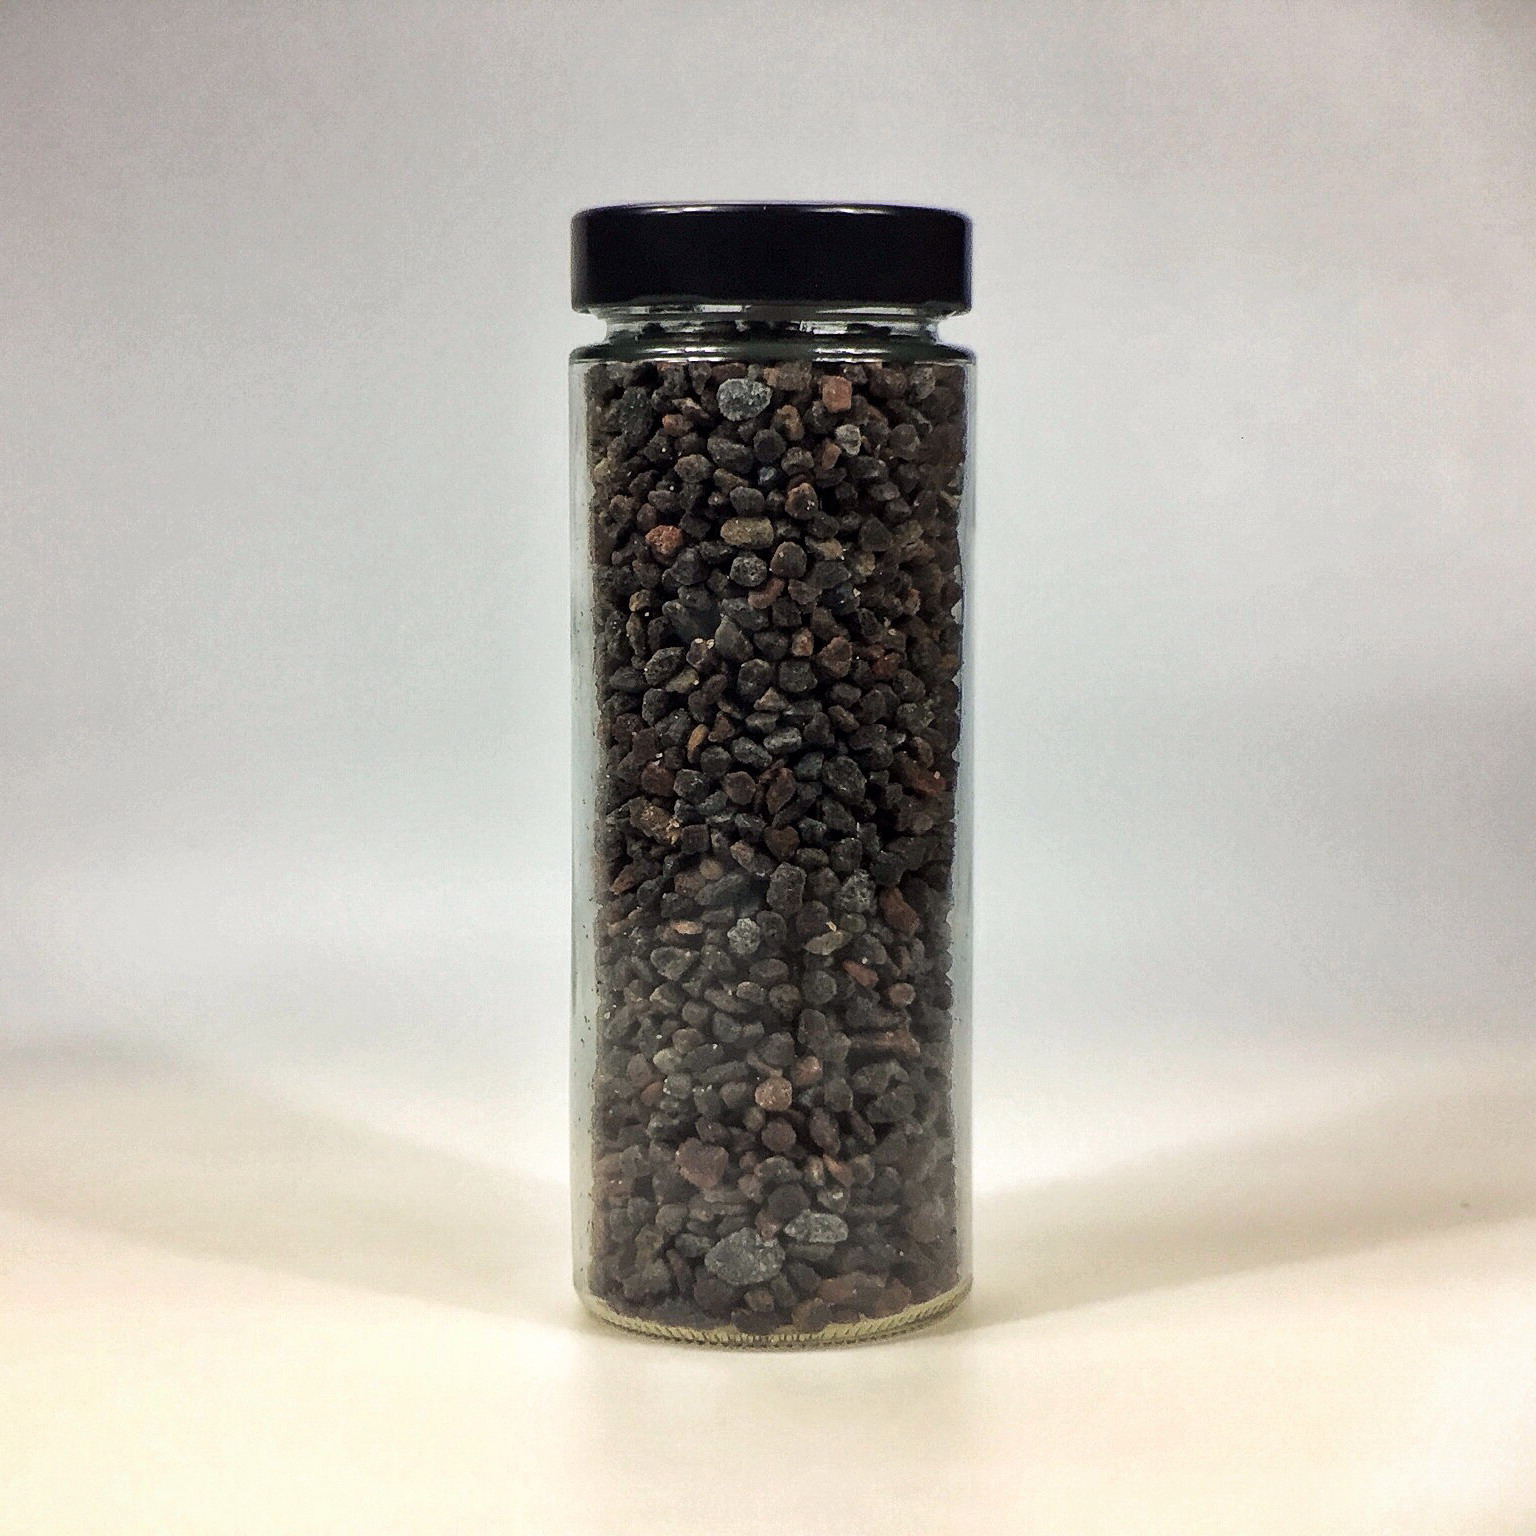 Kala Namak Salz grob gemahlen für Salzmühle im grossen Glas mit schwarzem Deckel